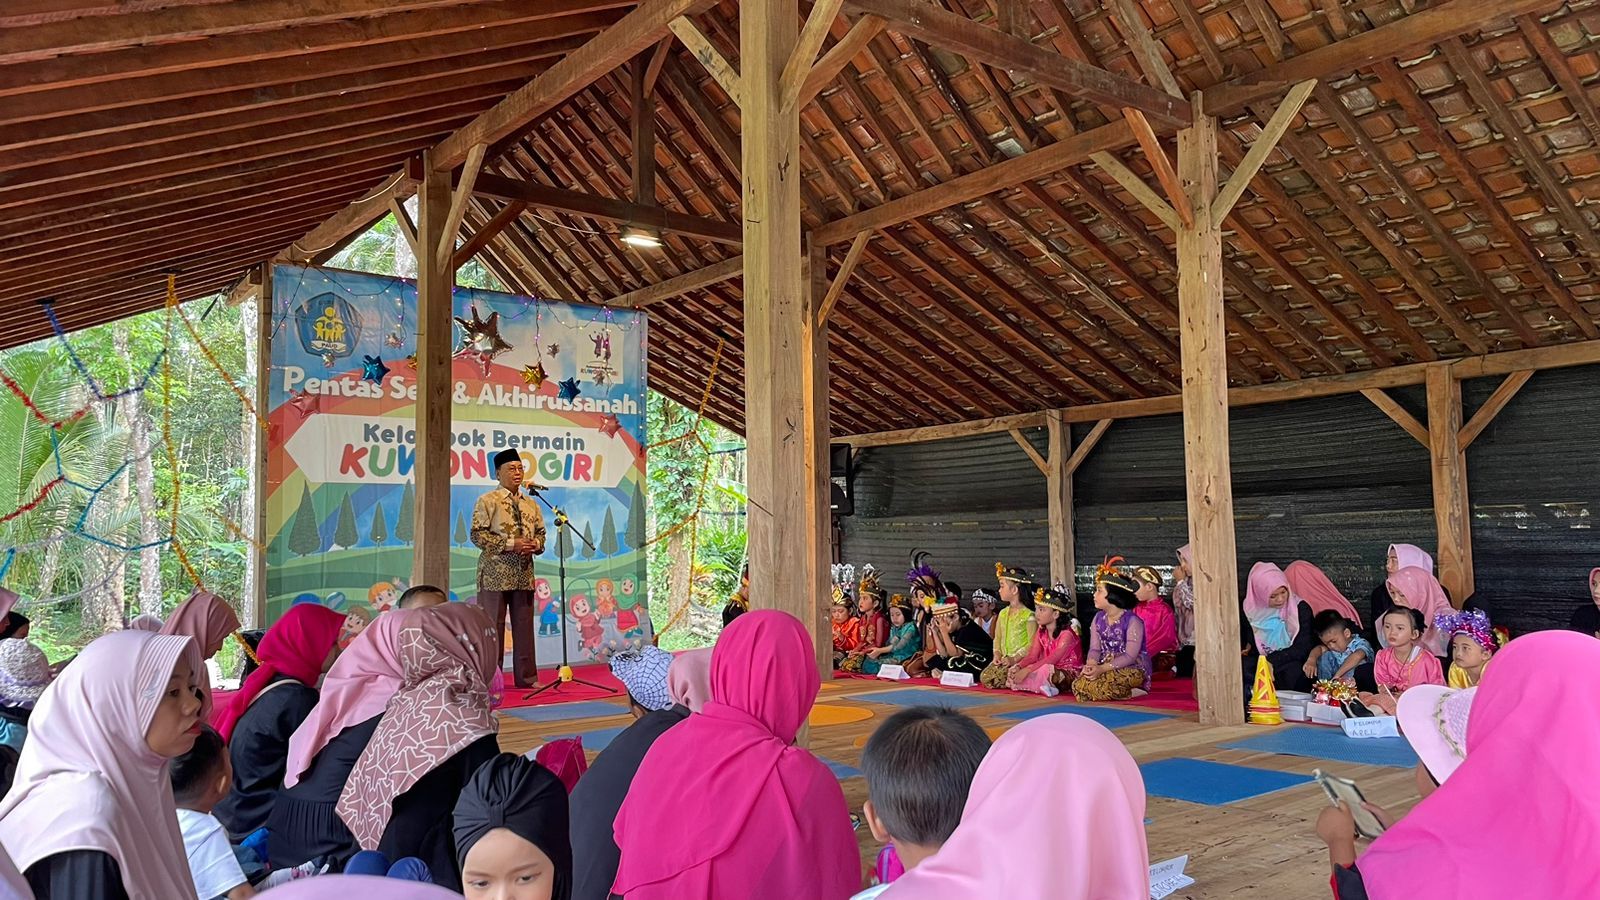 Back To Nature, Kelompok Bermain Kuwondogiri Gelar Pentas Seni dan Akhirusanah di Kampung Kelapa Sawit